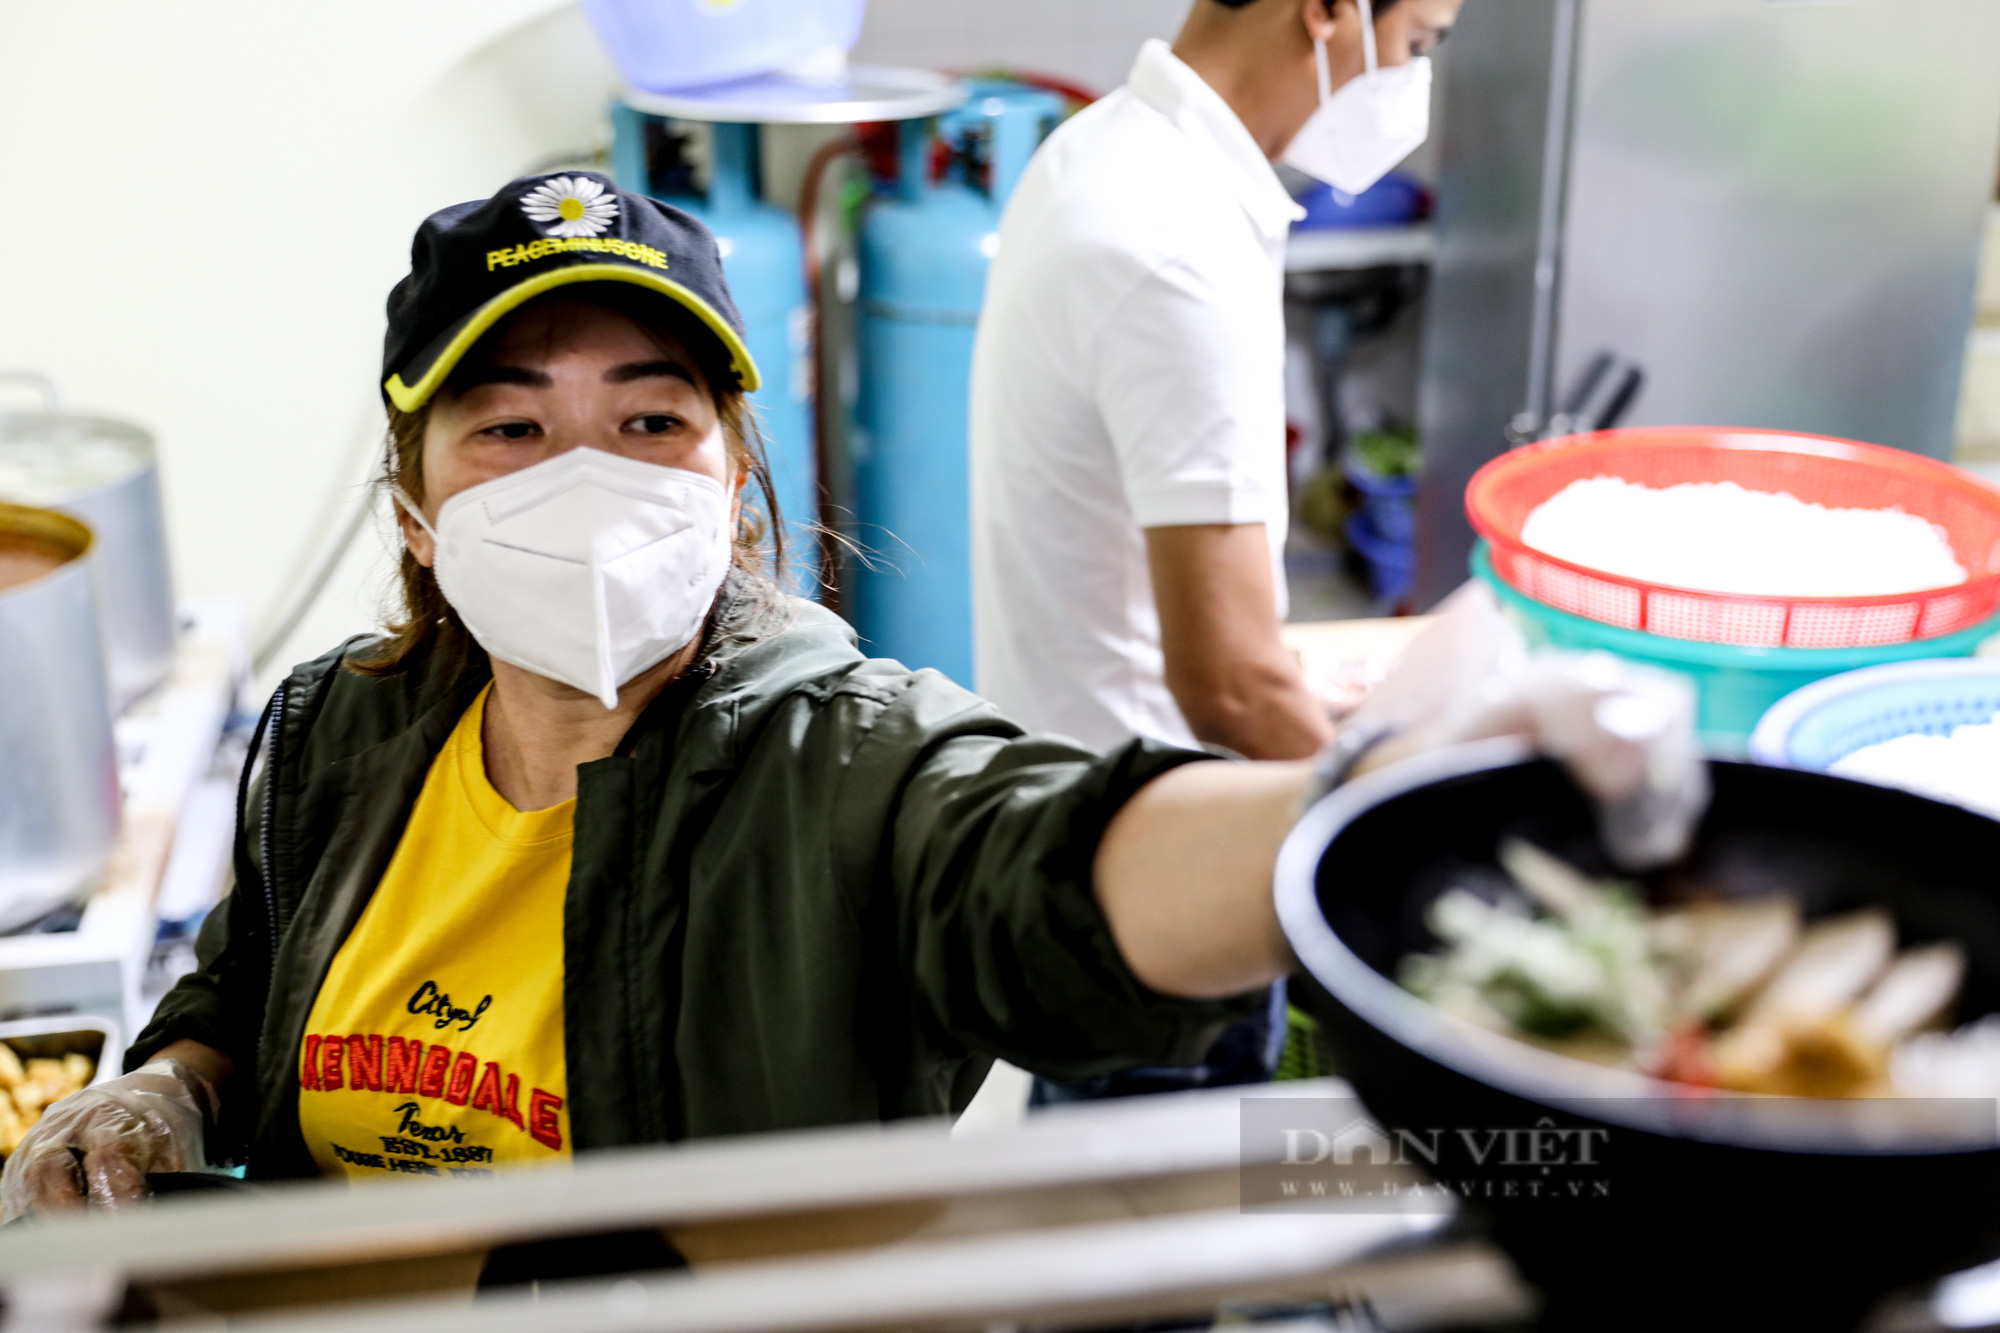 Quán ăn chay tại Hà Nội phục vụ 200 suất ăn mỗi ngày với giá 0 đồng  - Ảnh 4.